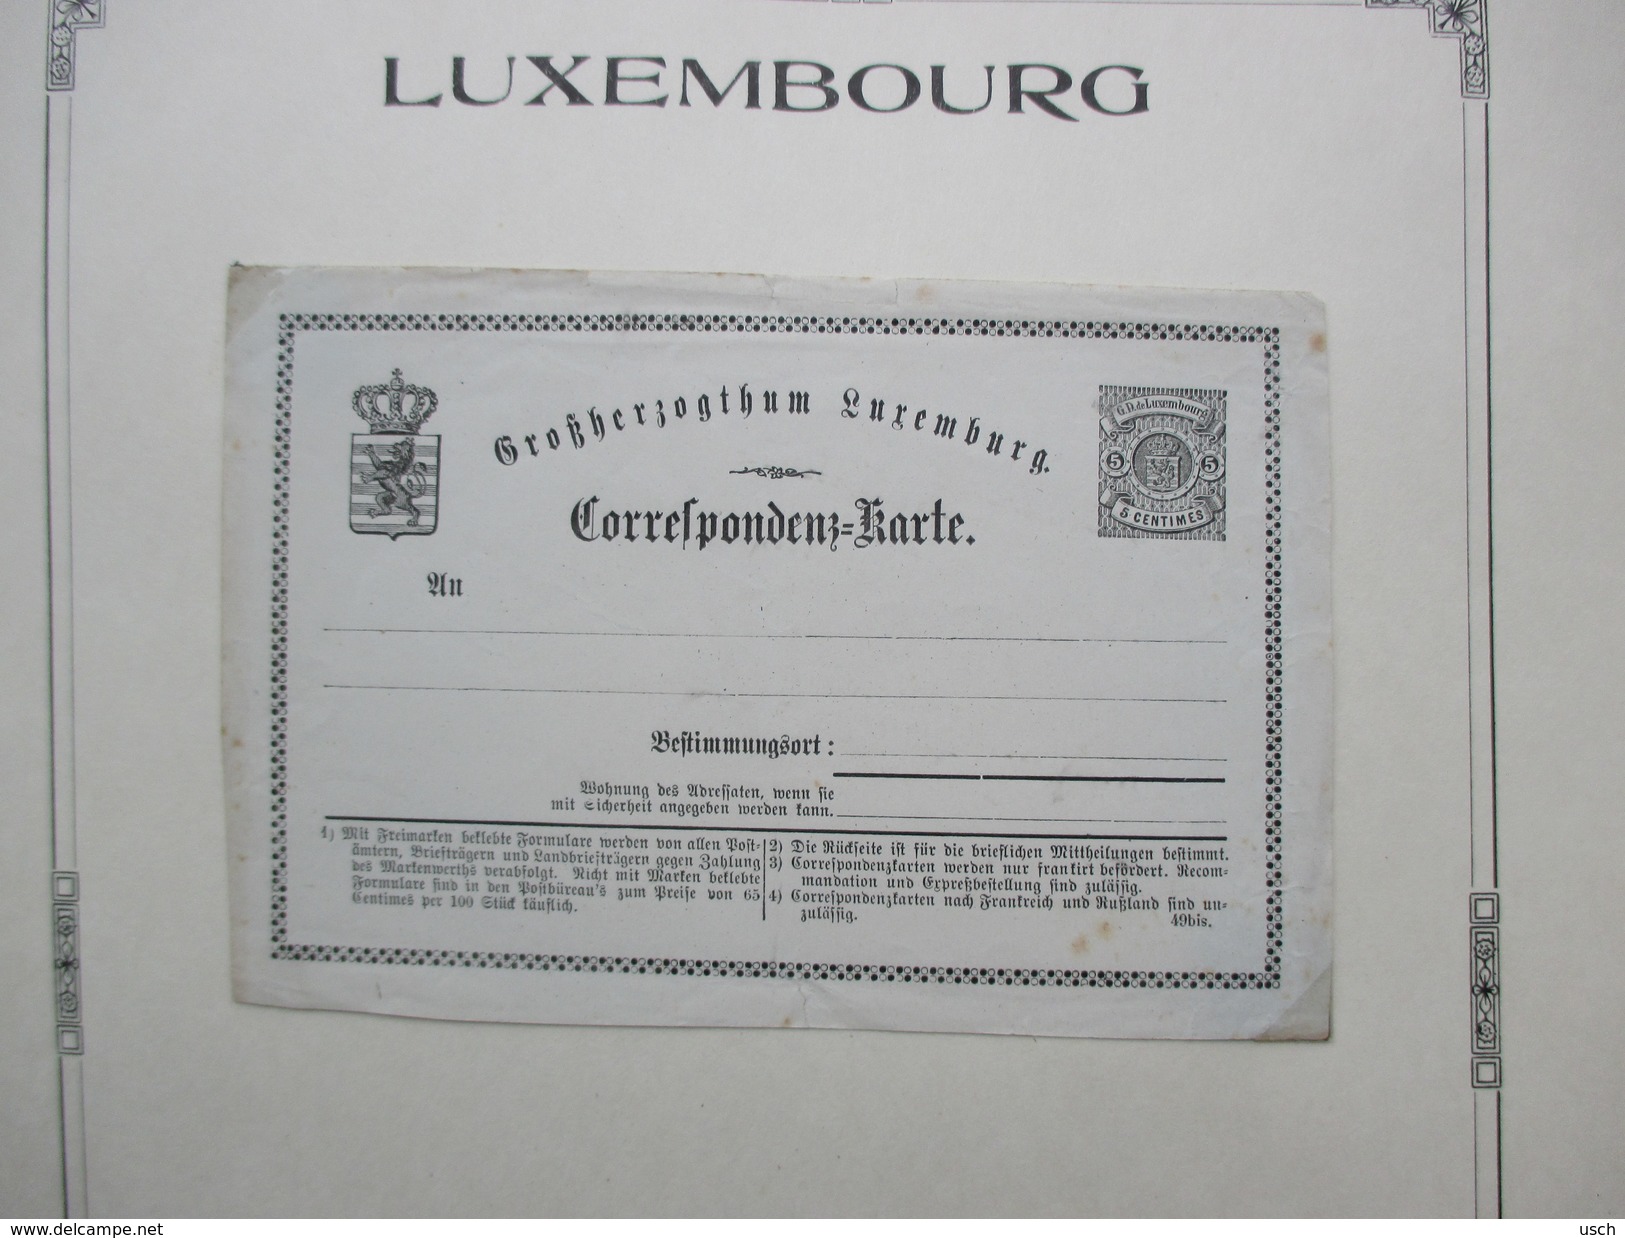 LUXEMBOURG, une énorme COLLECTION de 469 ENTIERS - POSTAL STATIONERY - GANZSACHEN, à voir absolument les scans (94) !!!!